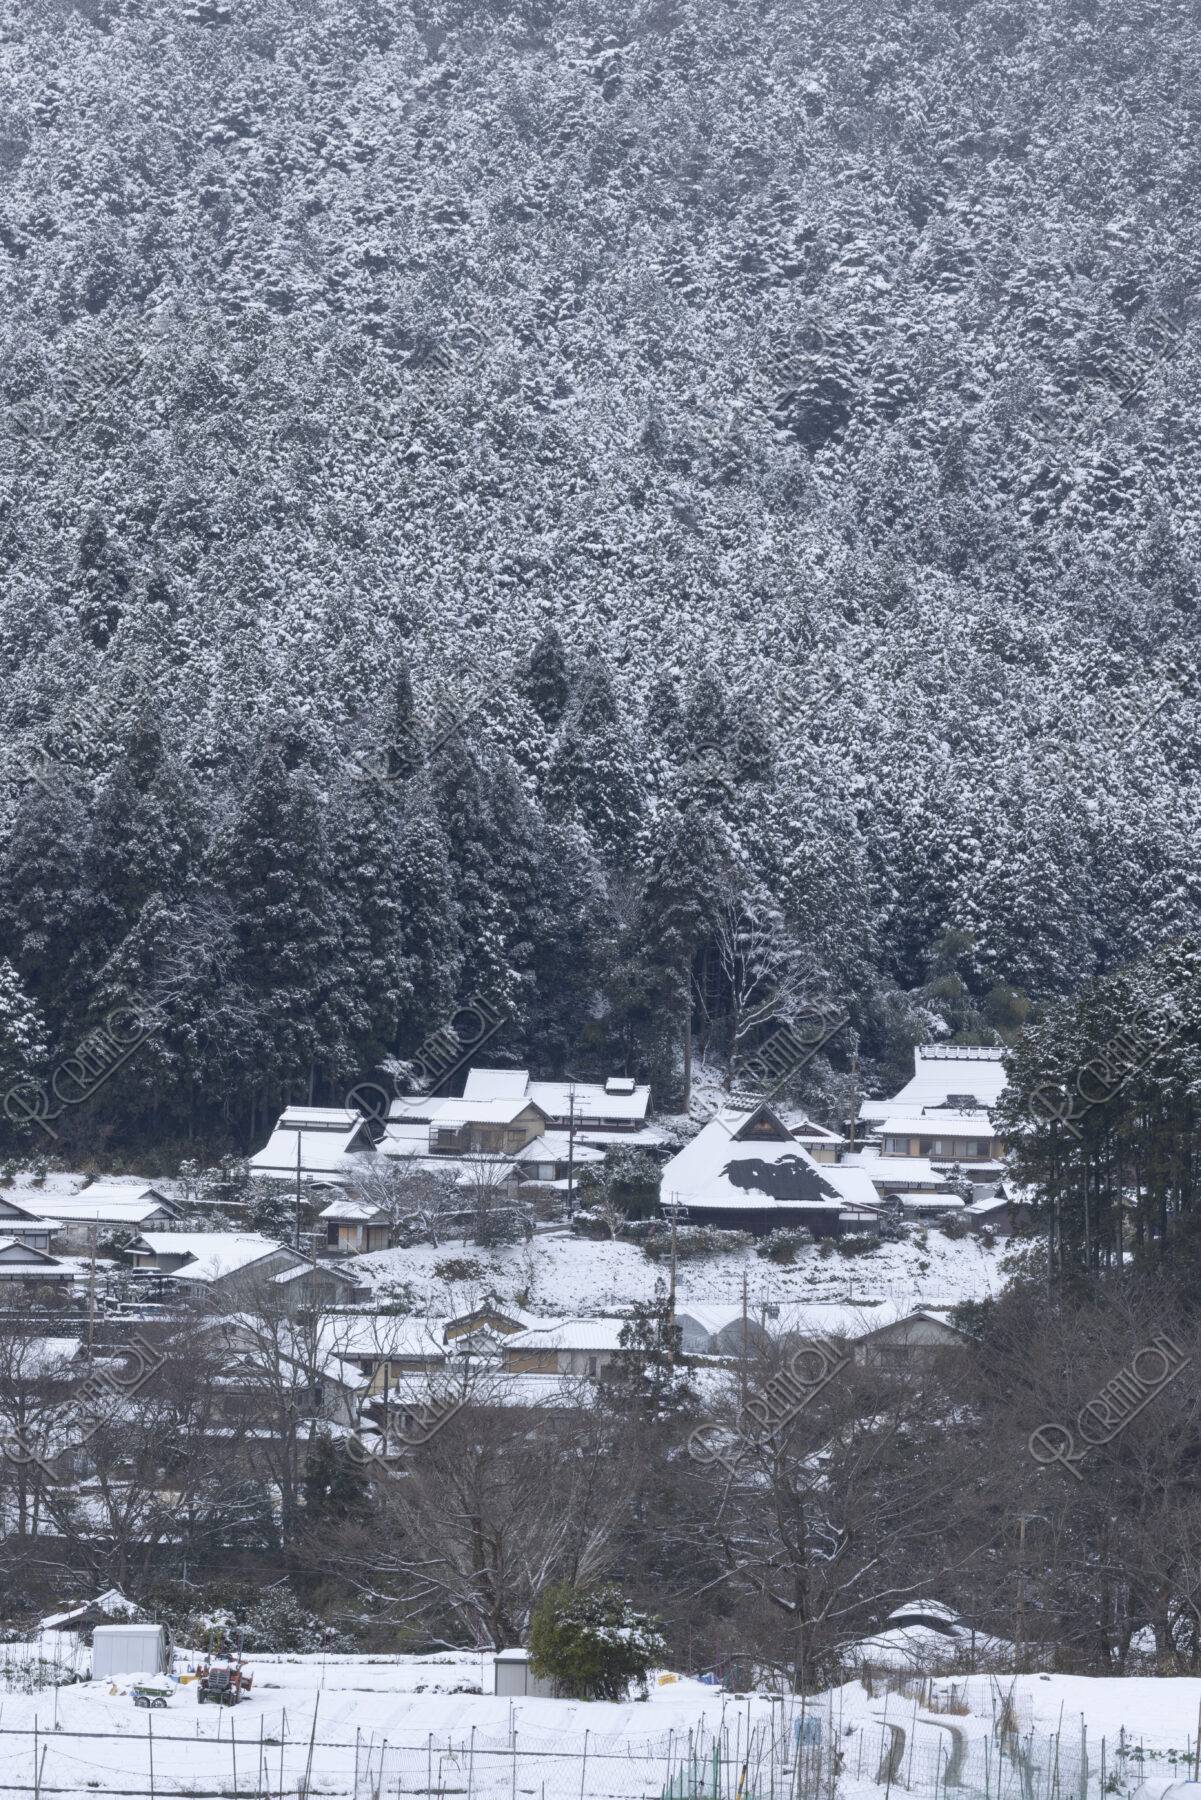 雪の大原集落